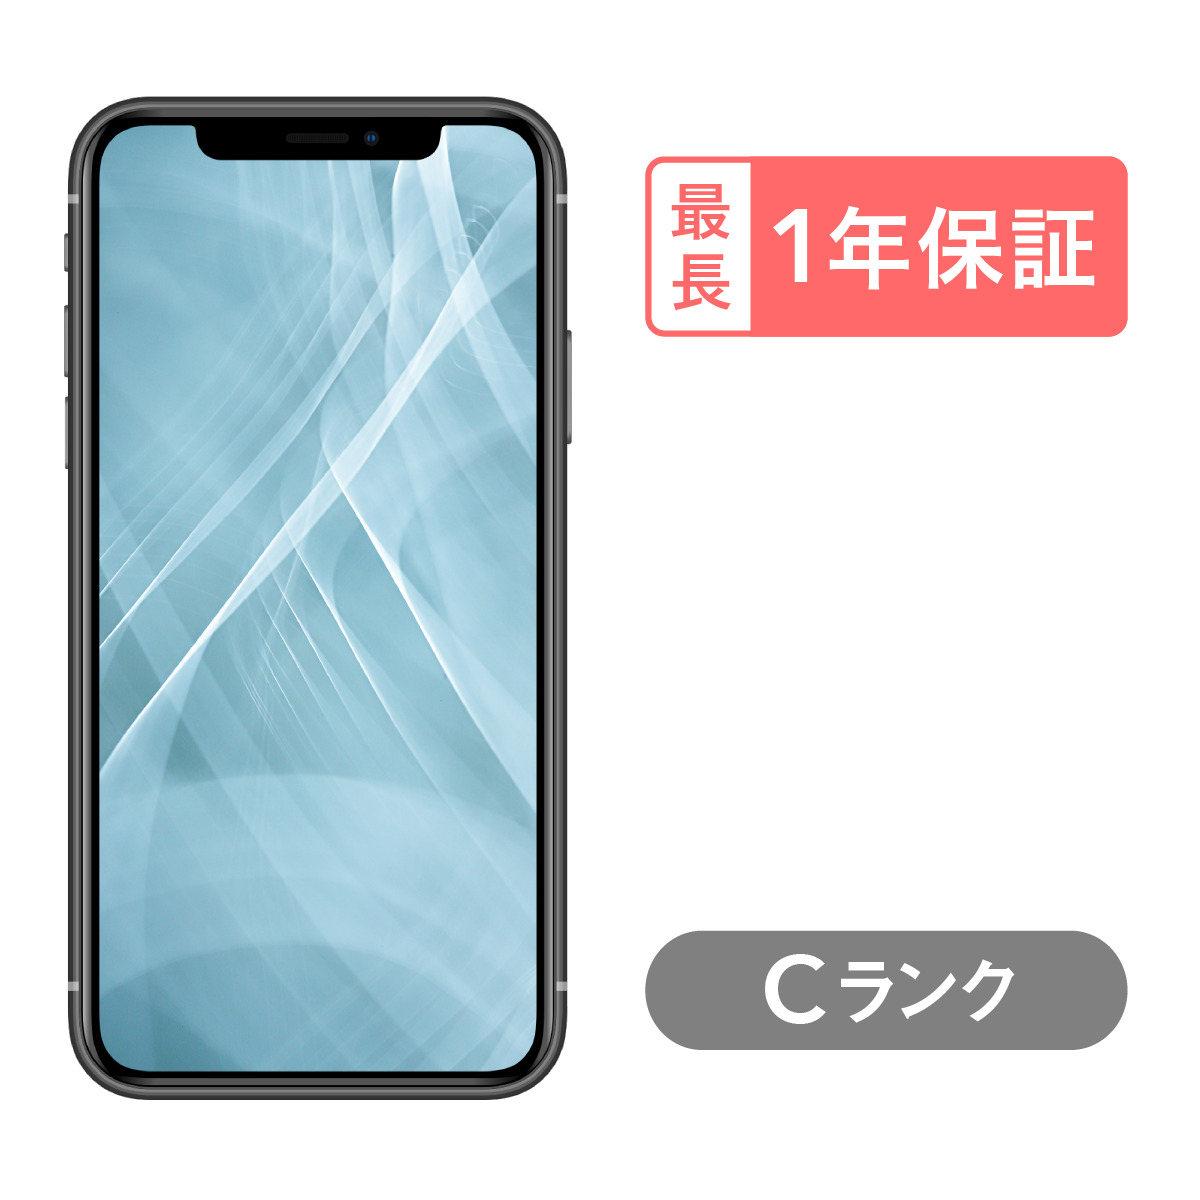 【楽天市場】iPhone 11 64GB 中古 スマホ スマートフォン 本体 SIM 